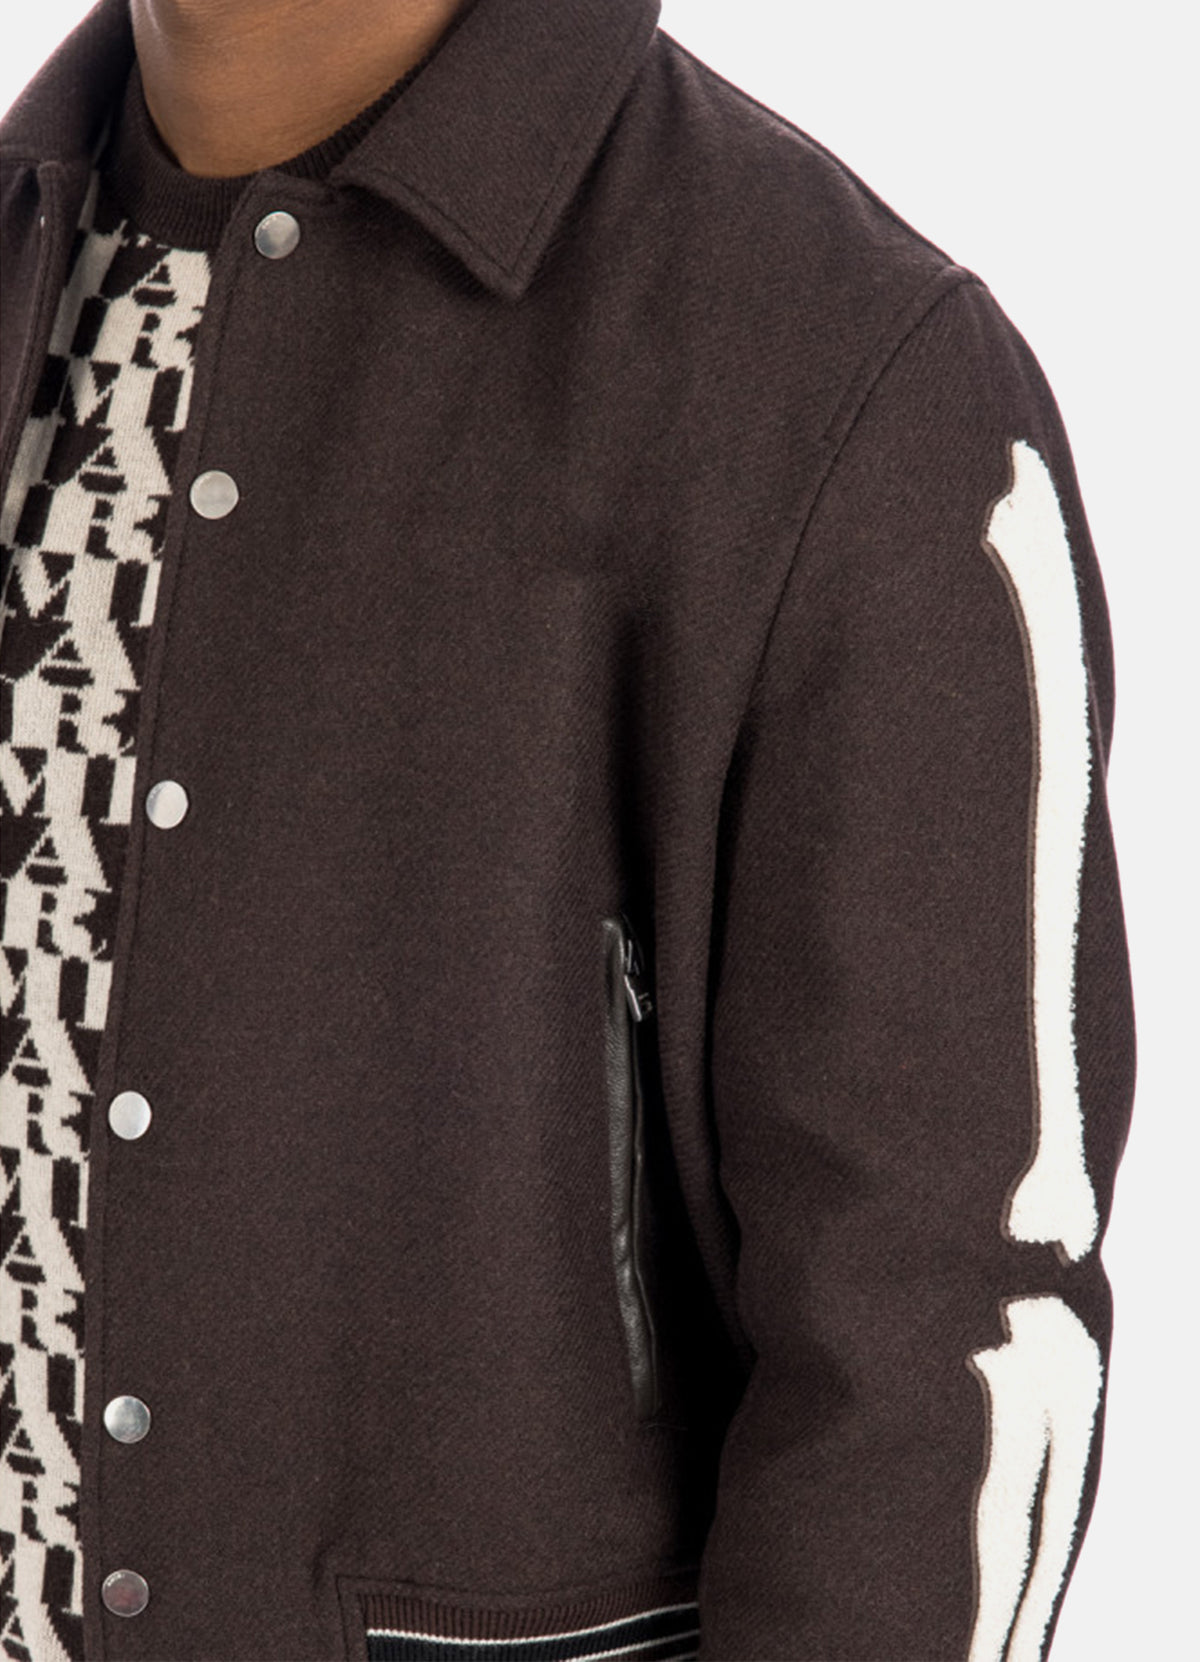 Mens Dark Brown Bone Design Varsity Jacket | Elite Jacket